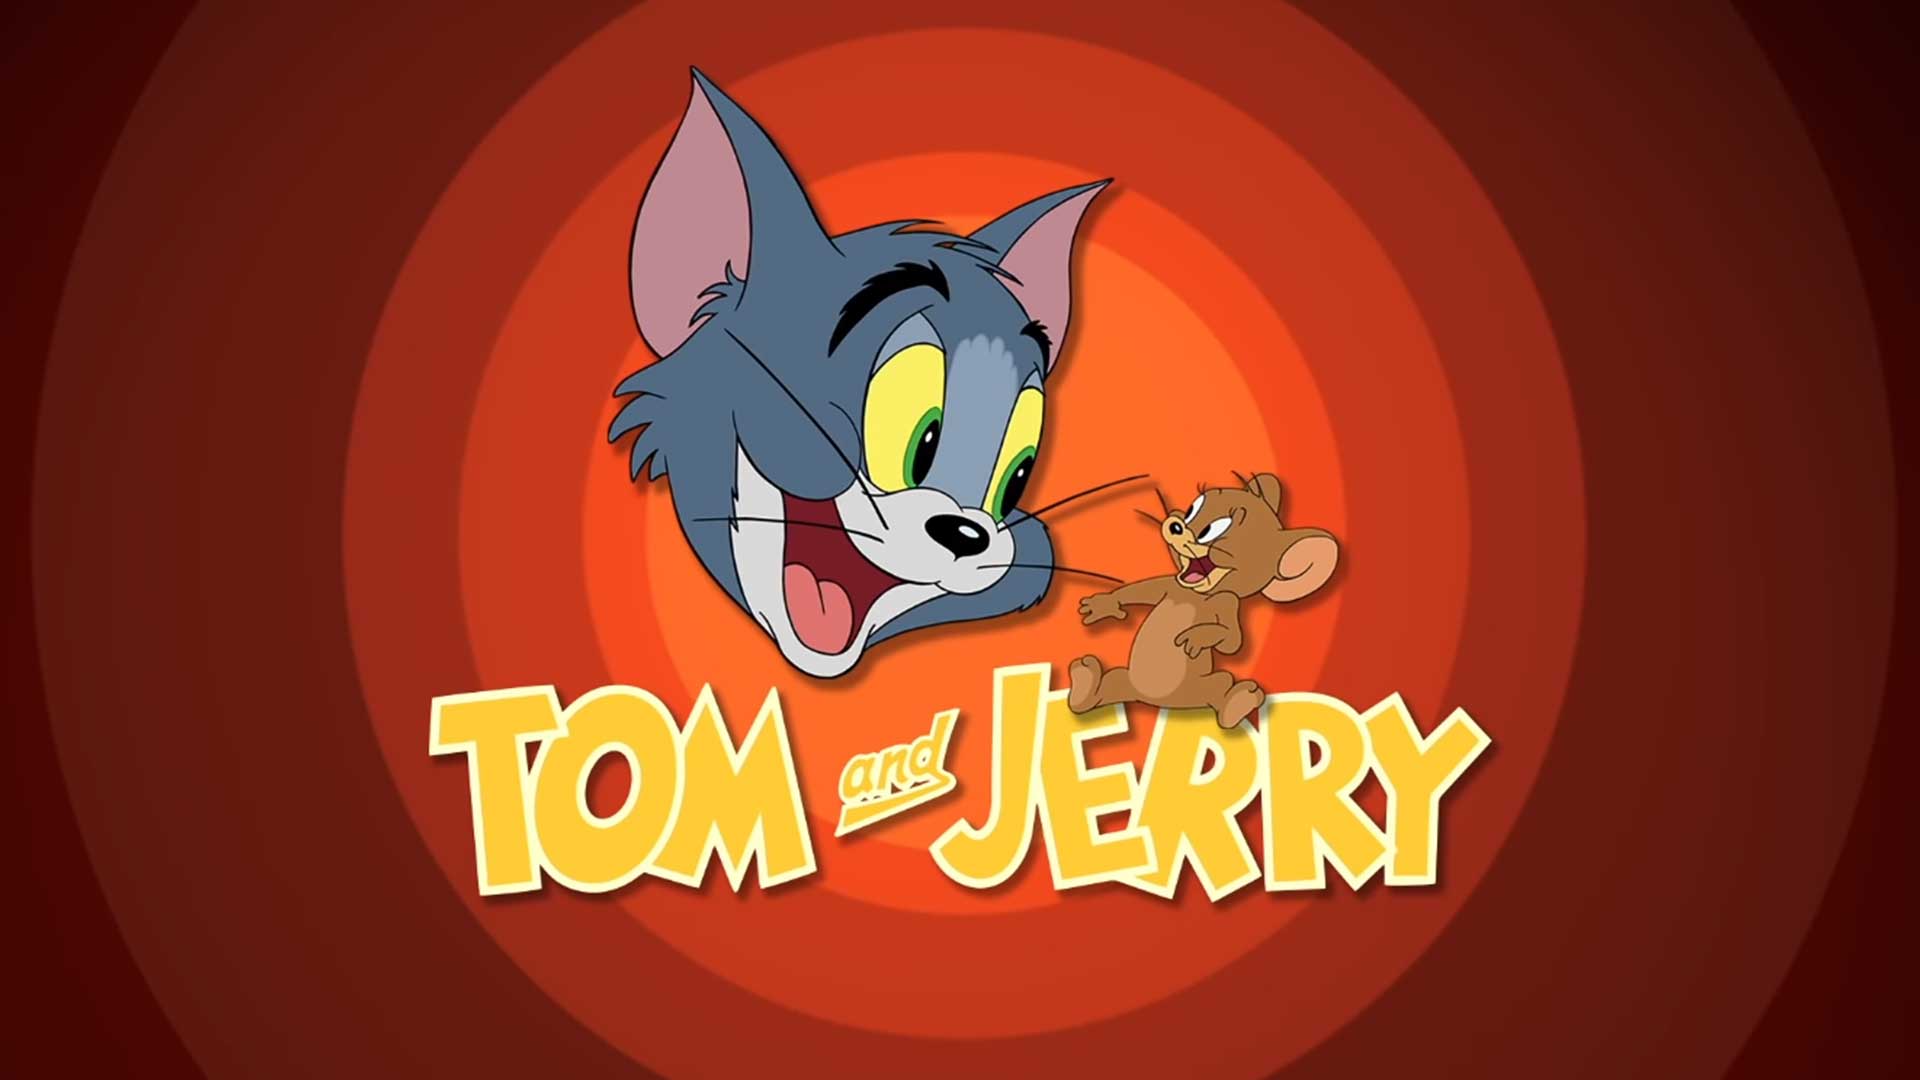 Том и Джерри – 73 серия «Пропавший мышонок» / Tom and Jerry